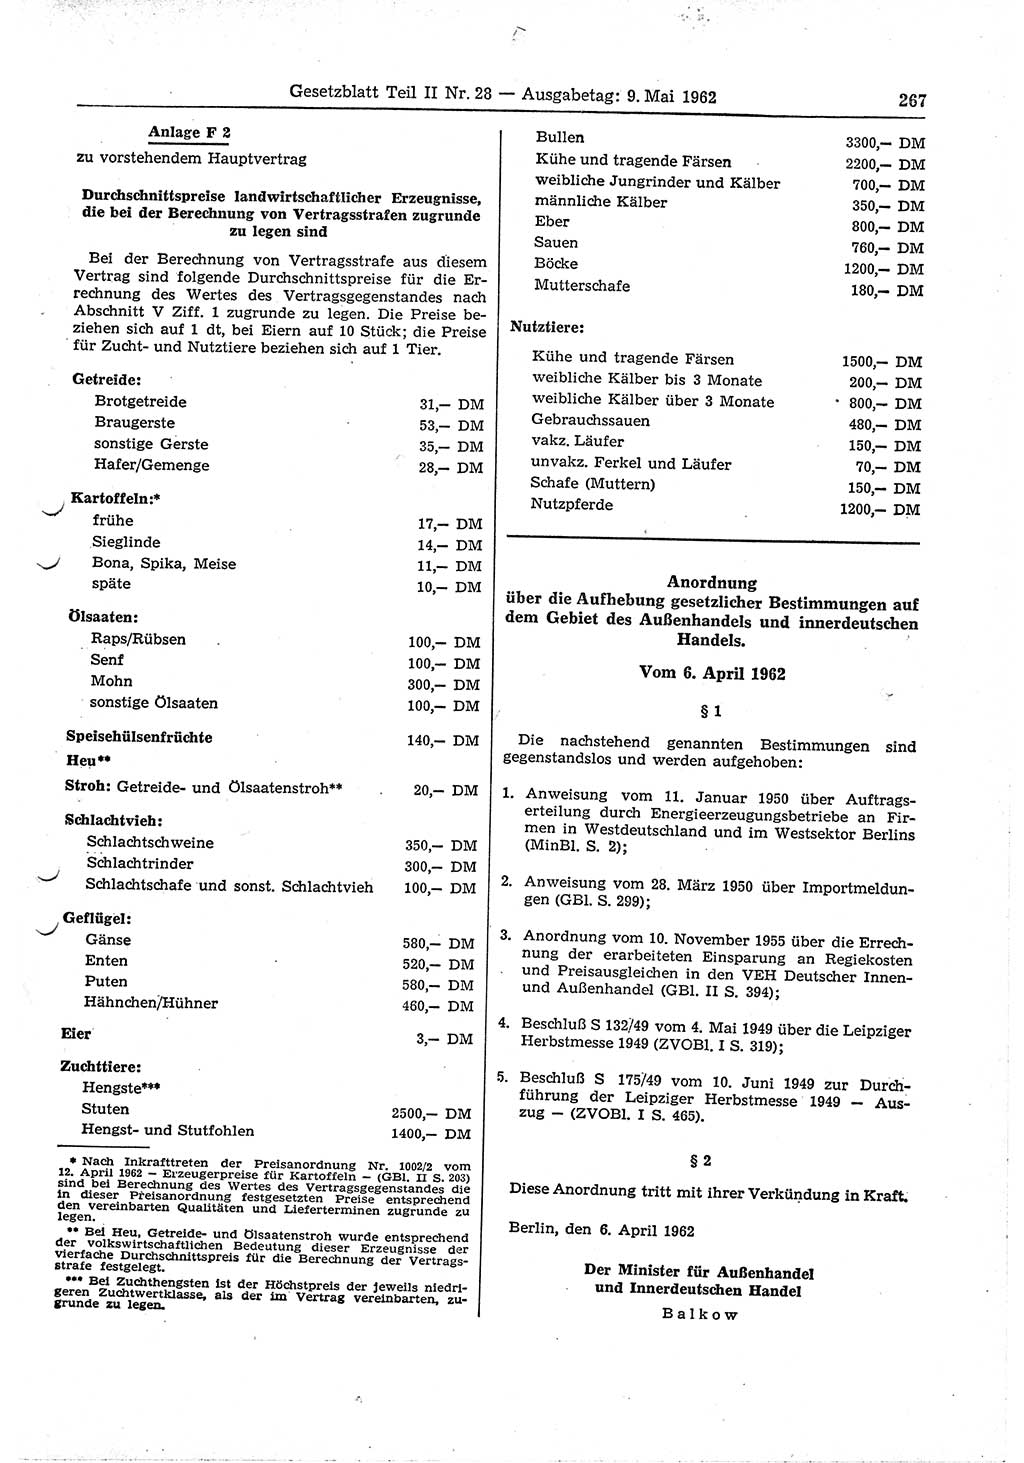 Gesetzblatt (GBl.) der Deutschen Demokratischen Republik (DDR) Teil ⅠⅠ 1962, Seite 267 (GBl. DDR ⅠⅠ 1962, S. 267)